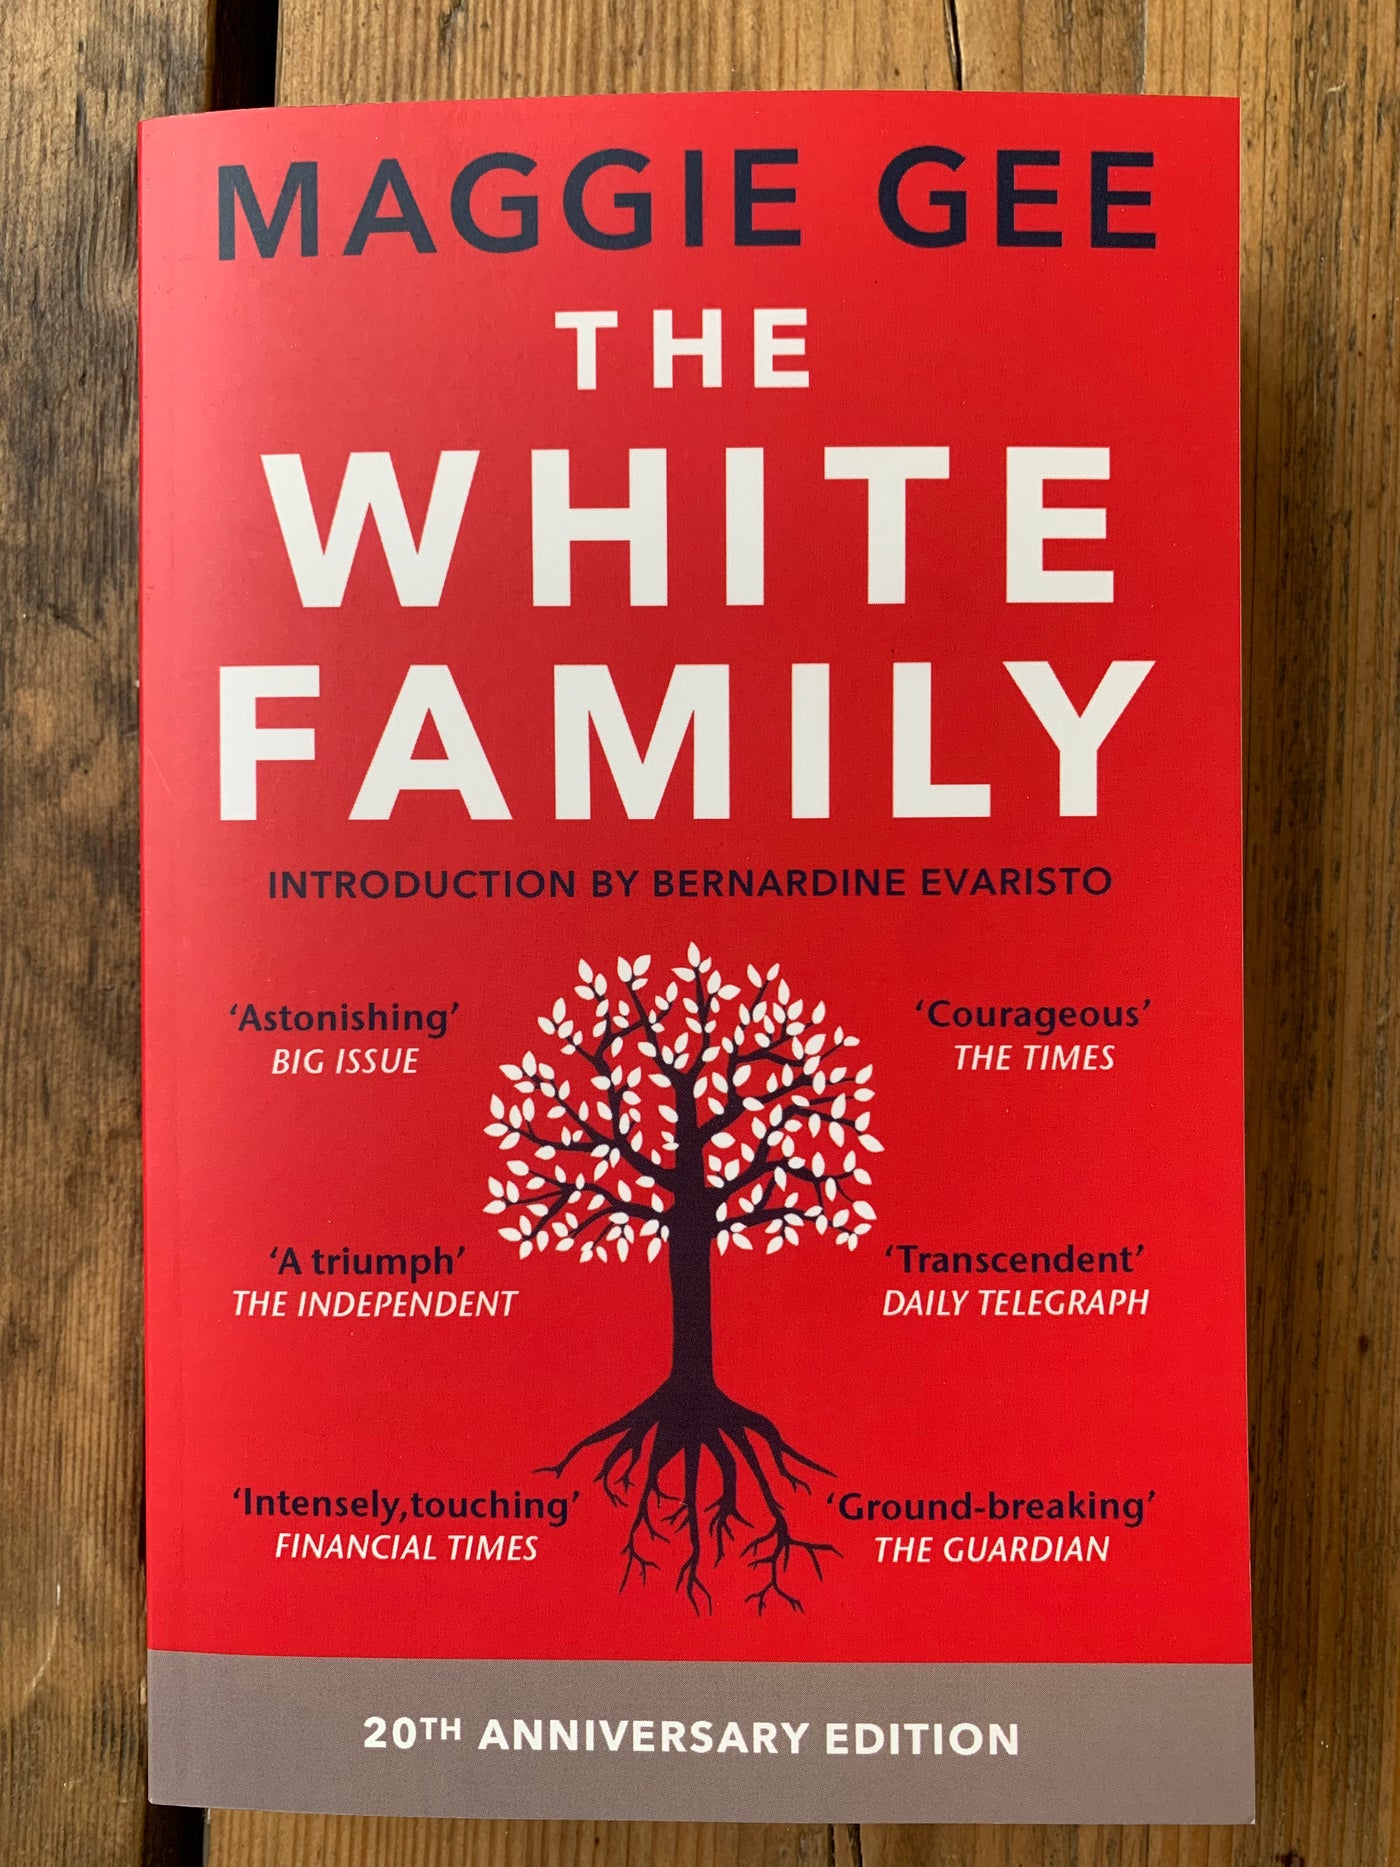 The White Family